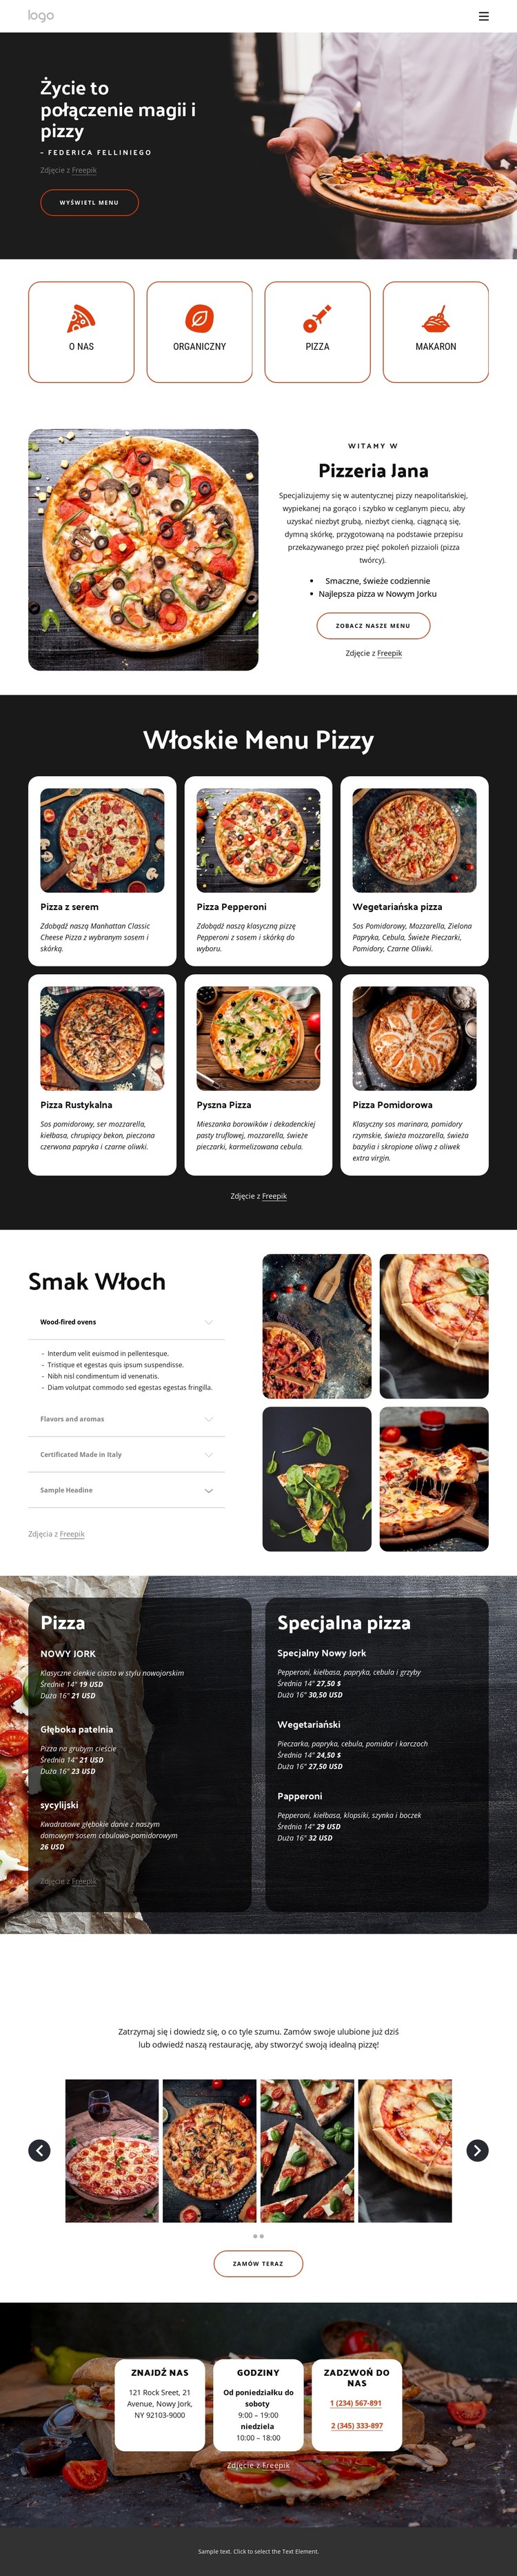 Pizzeria rodzinna Szablon HTML